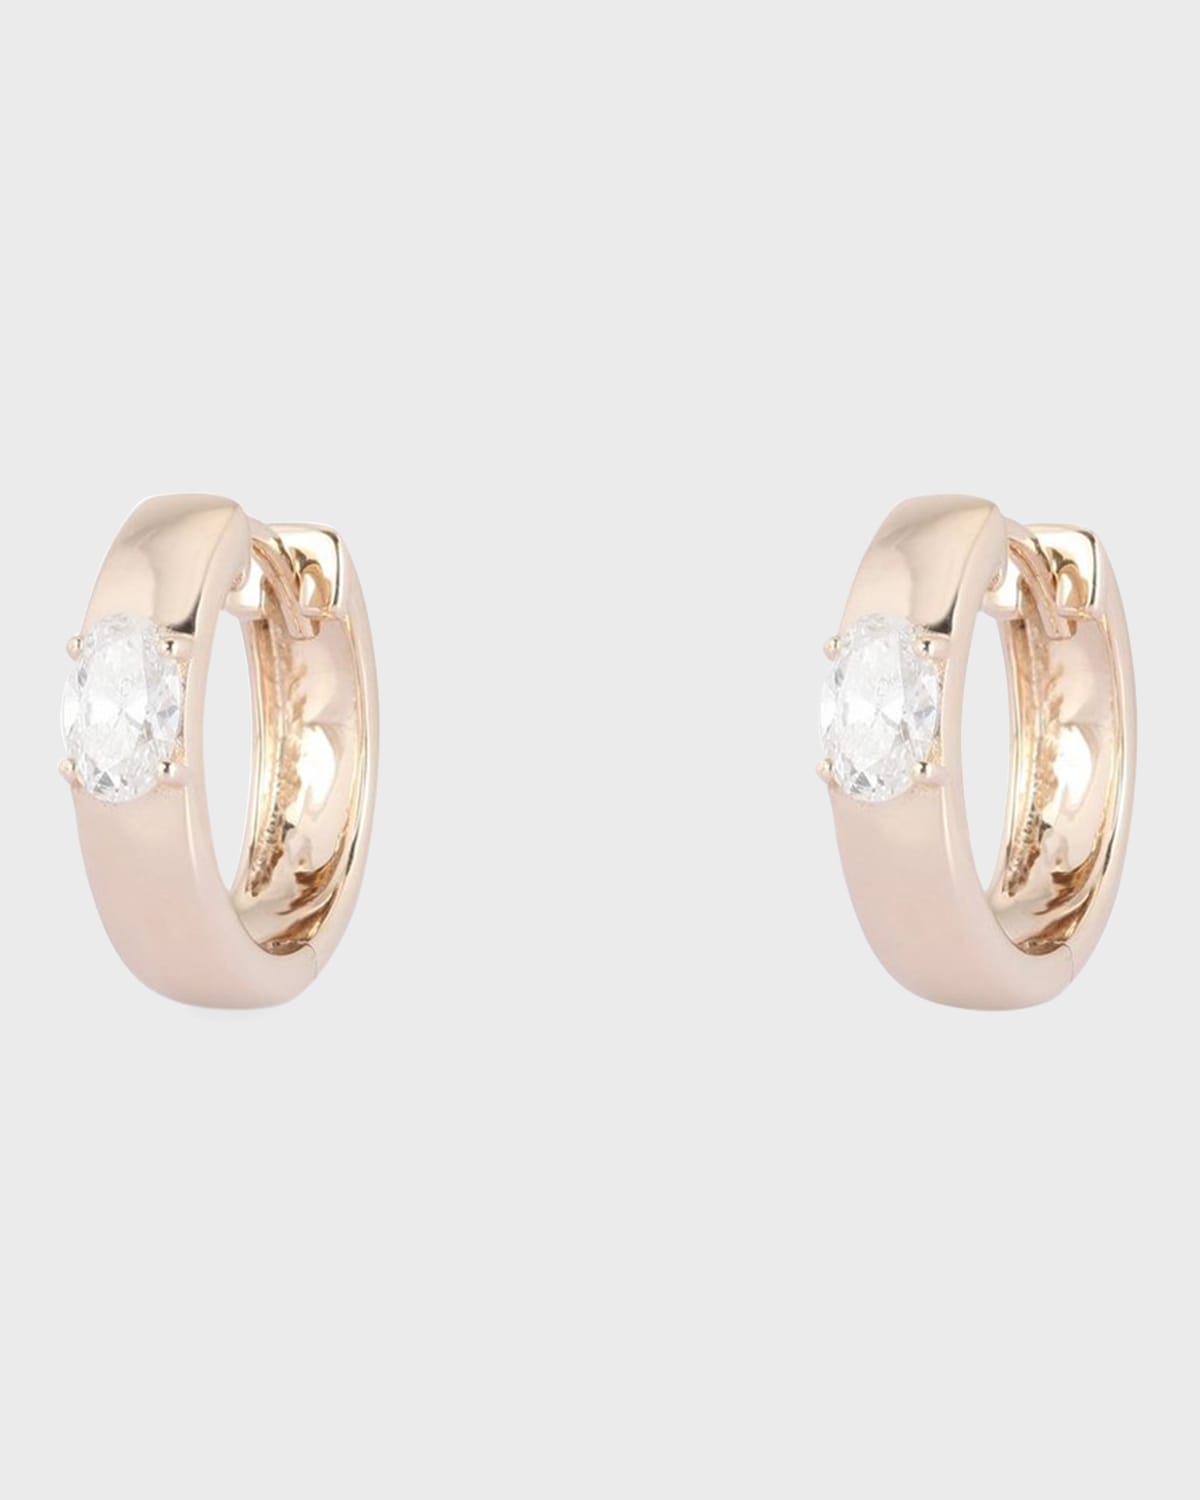 Kastel Jewelry Oval Diamond Earrings in 14k Yellow Gold